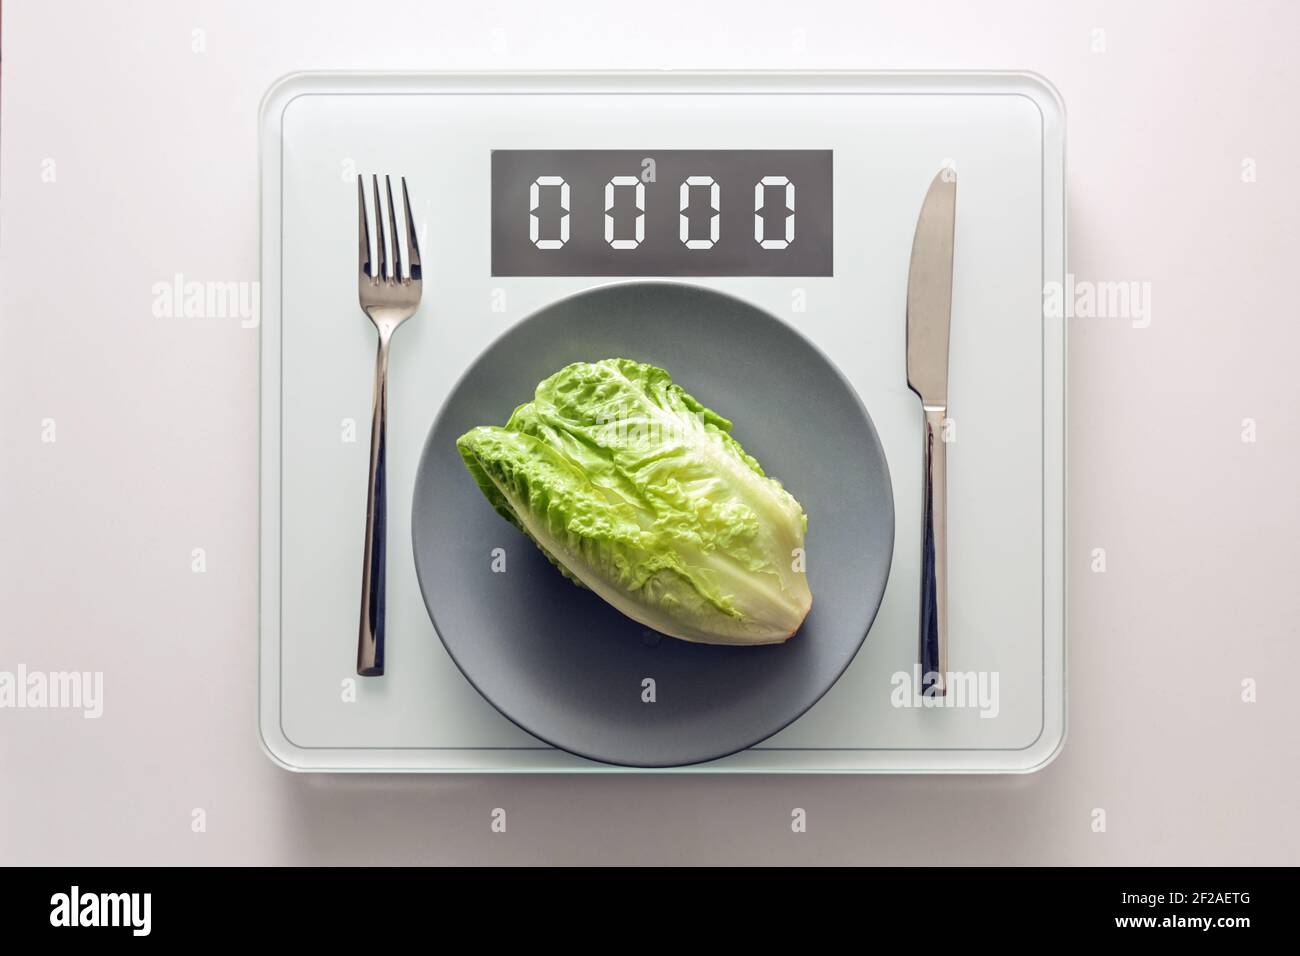 Frischer grüner Salat oder Baby cos auf einem grauen Teller und Besteck auf einer digitalen Waage, die Null, gesunde Ernährung und Gewicht verlieren Konzept, Kopierer Platz, Stockfoto